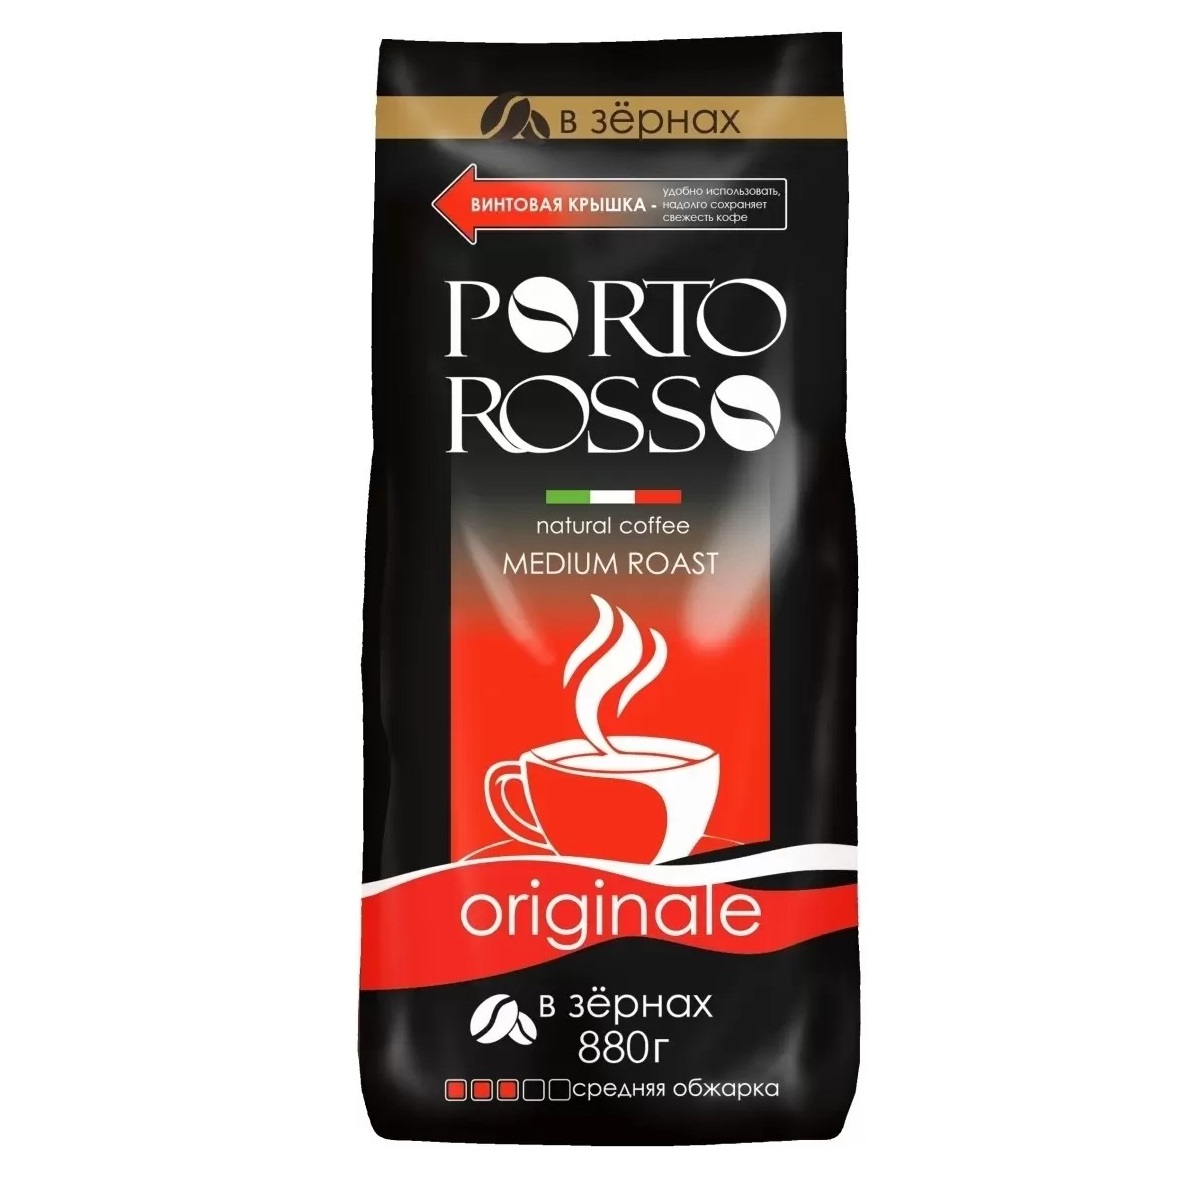 Кофе Porto Rosso в зернах Originale 880г кофе в зернах porto rosso oro 440 г